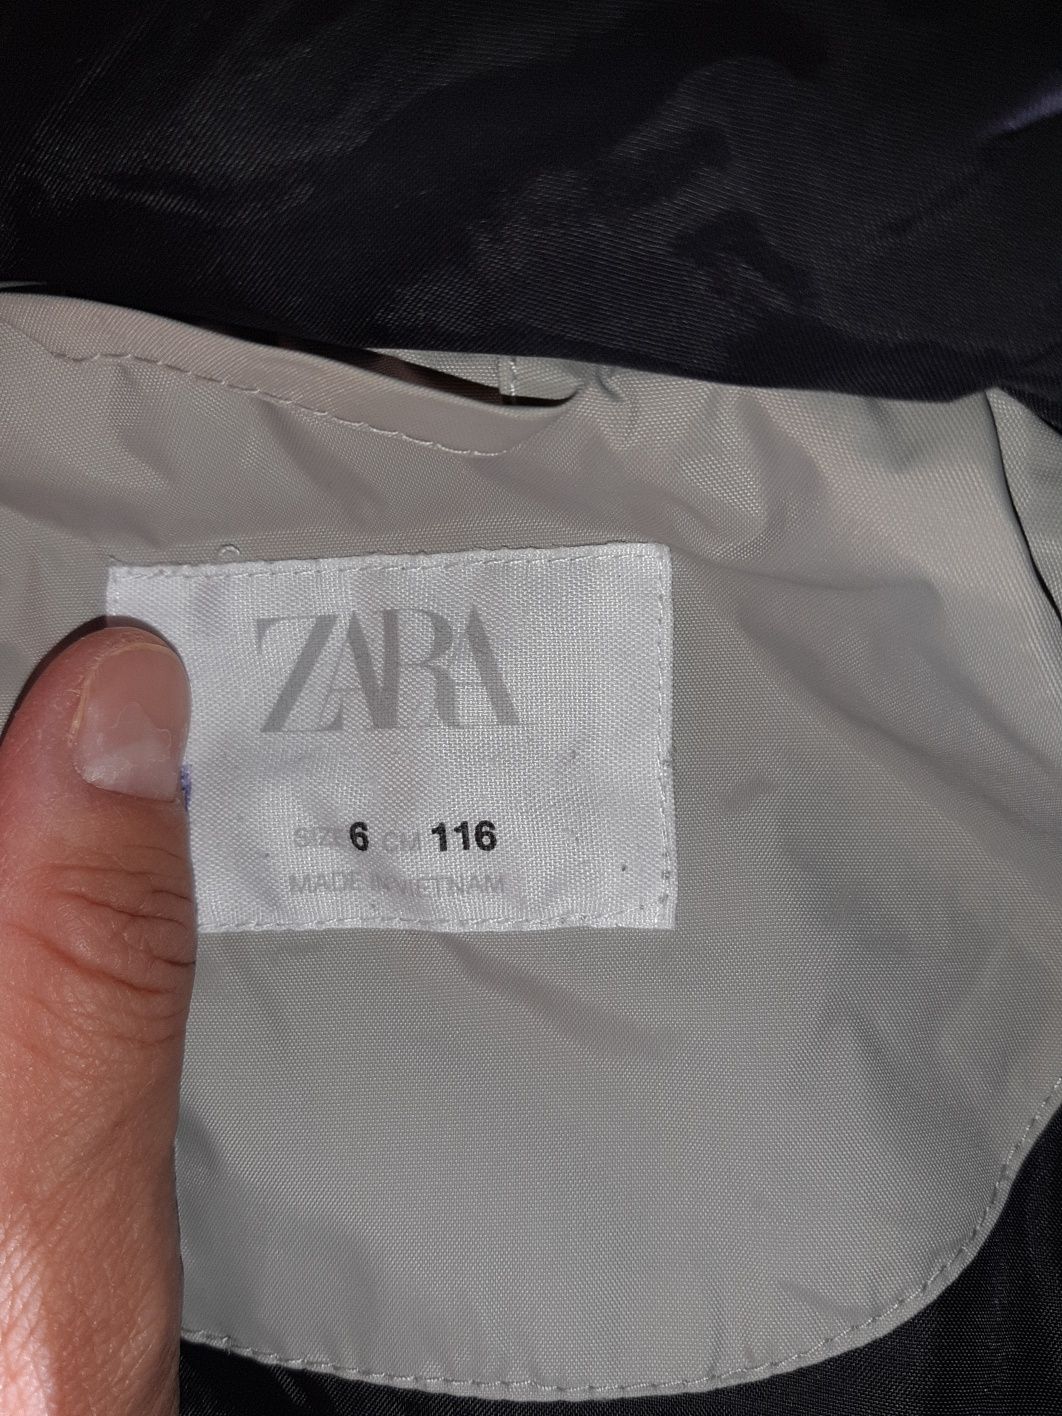 Geacă Zara  toamnă iarnă  băiat mărimea 116 Zara